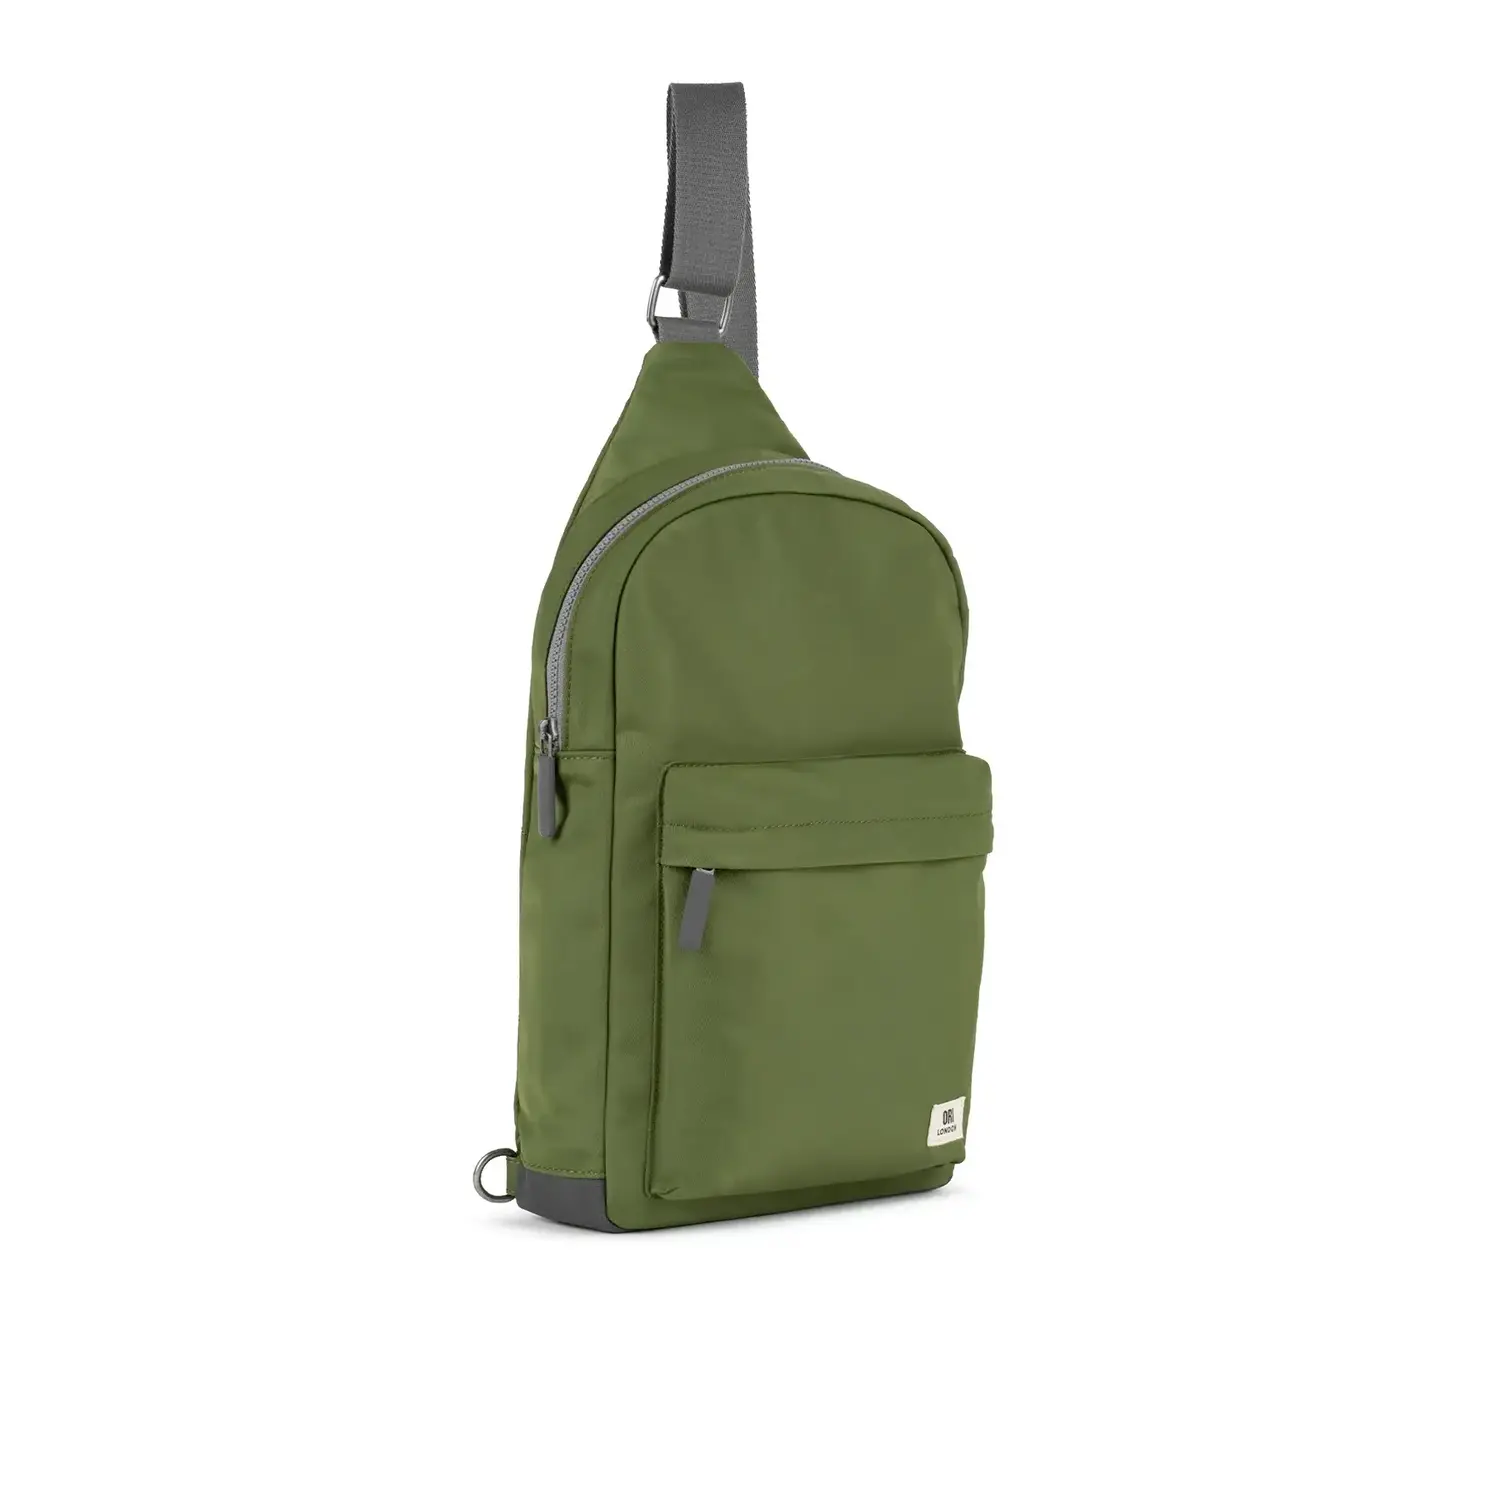 Sling Bag Backpack with Adjustable Strap - FBG1855